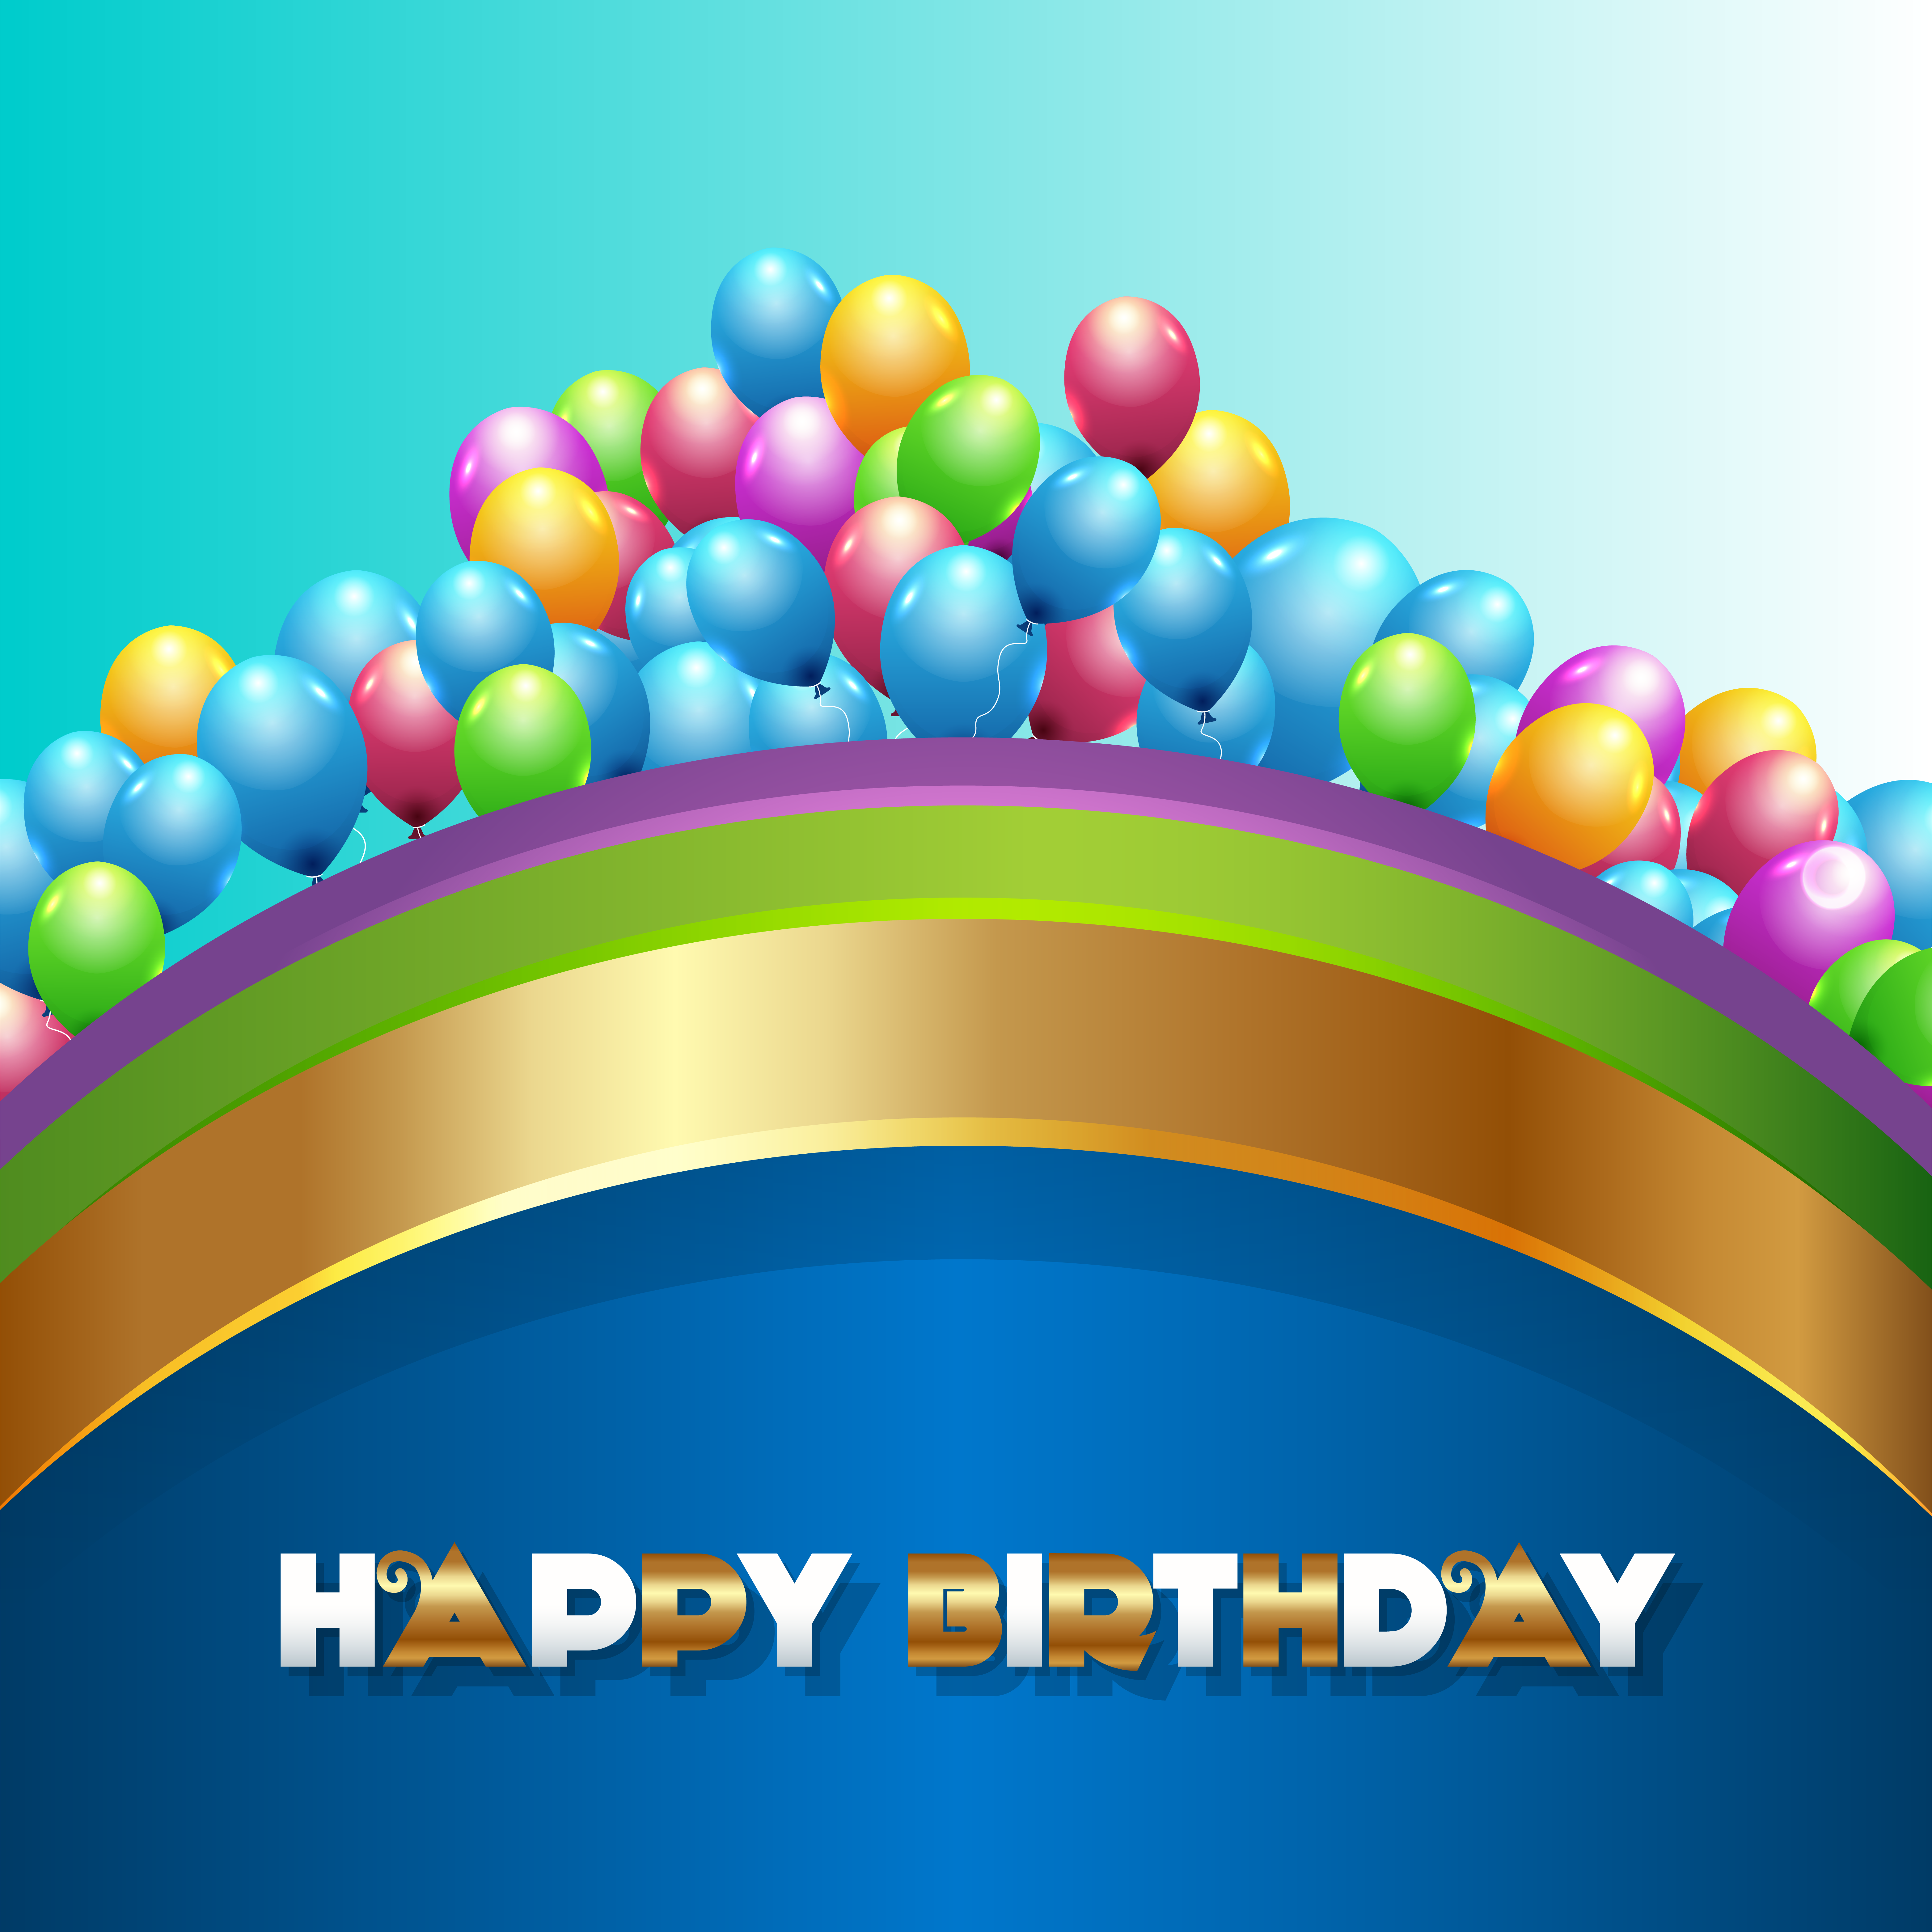 Màu xanh với bóng bay là trang trí sinh nhật không thể thiếu. Hãy đến với trang web của chúng tôi để tải về những hình nền sinh nhật màu xanh đầy bóng bay để trang trí cho buổi tiệc sinh nhật của bạn.